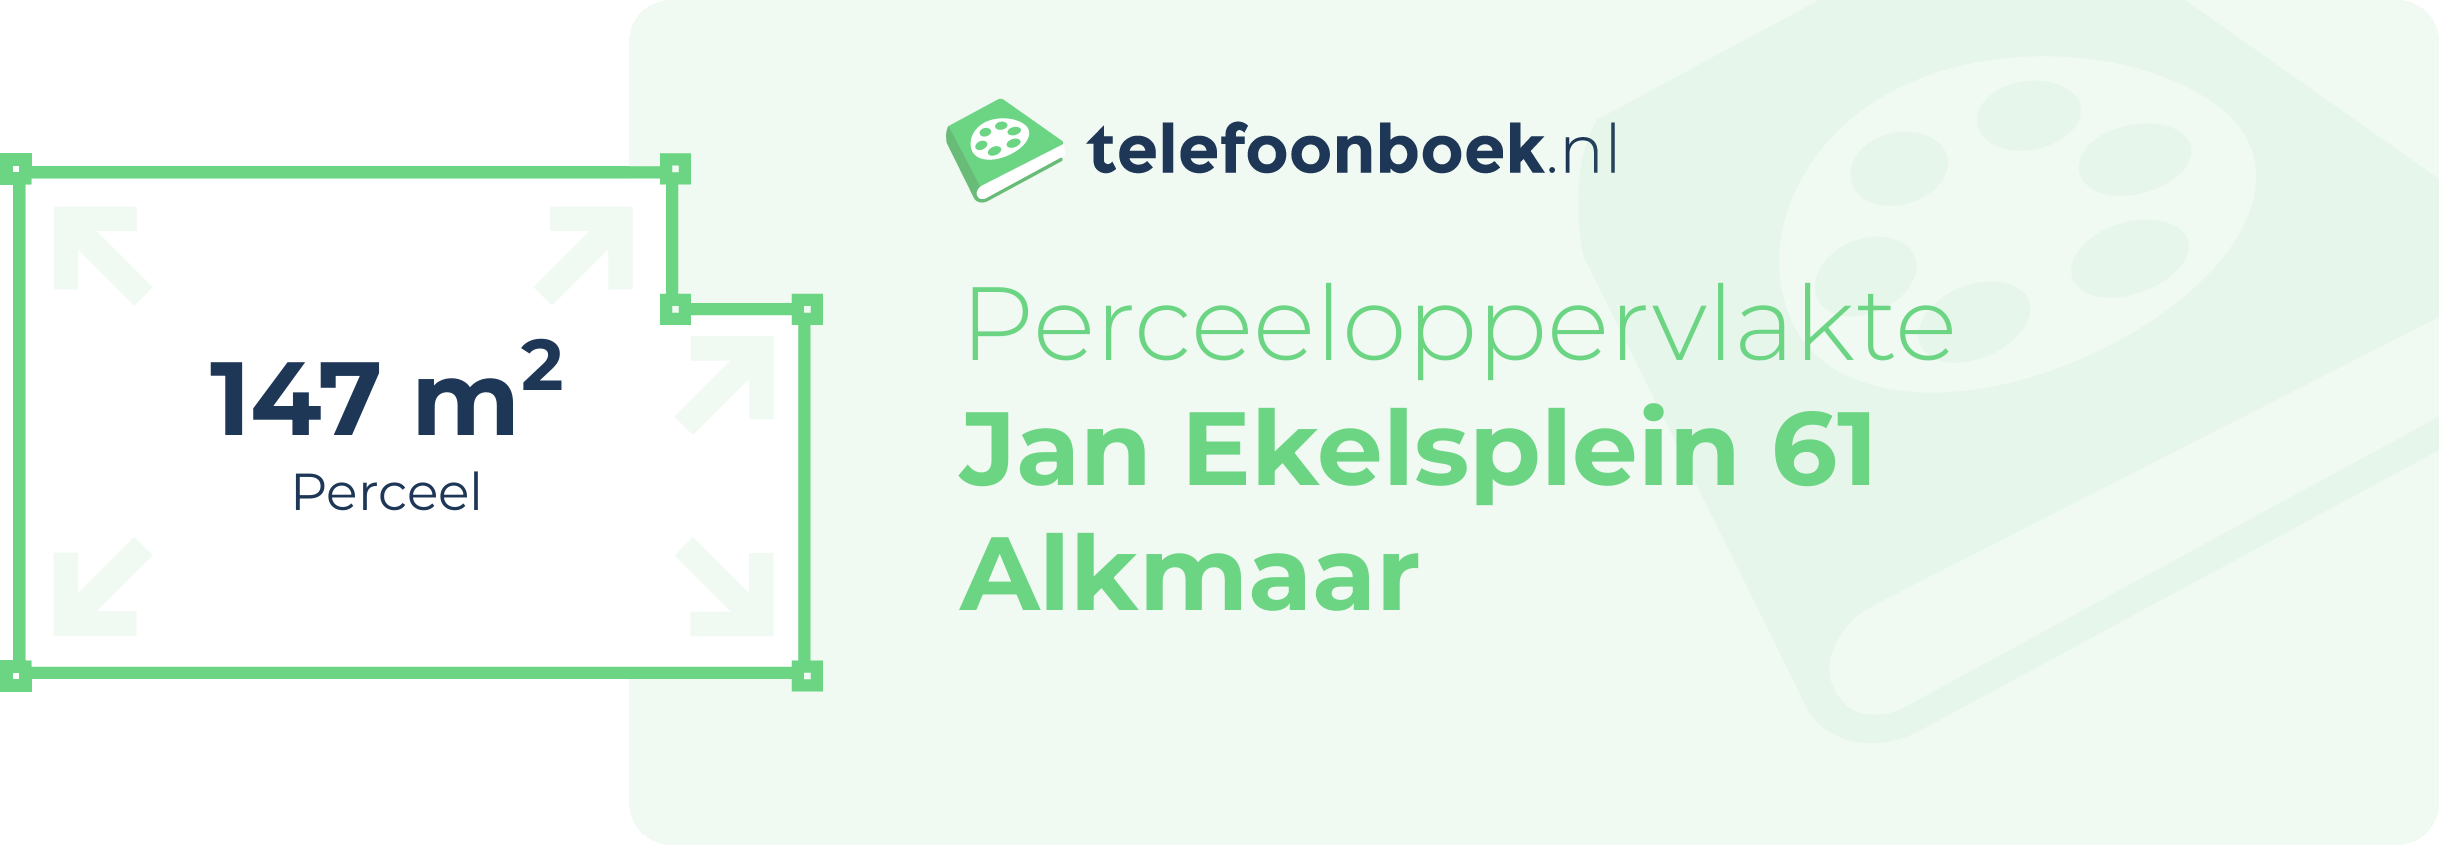 Perceeloppervlakte Jan Ekelsplein 61 Alkmaar